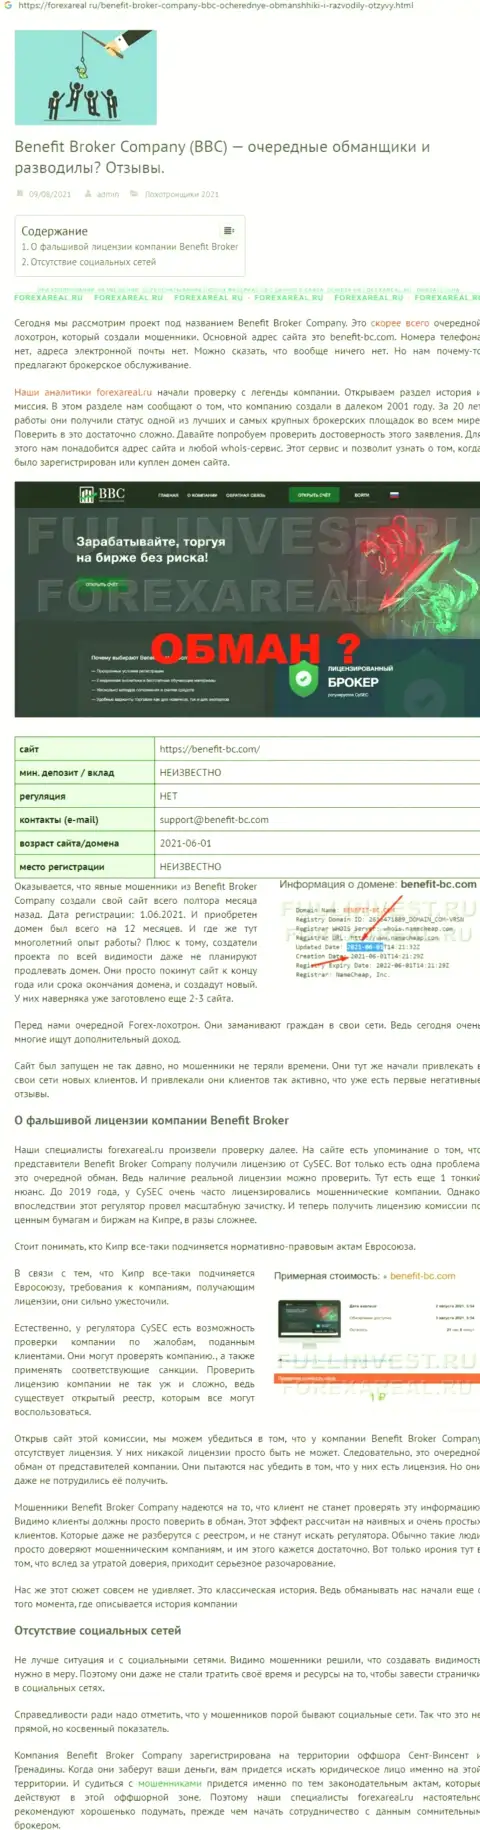 BenefitBroker Company - РАЗВОДИЛЫ !!! Слив депозита гарантируют (обзор организации)